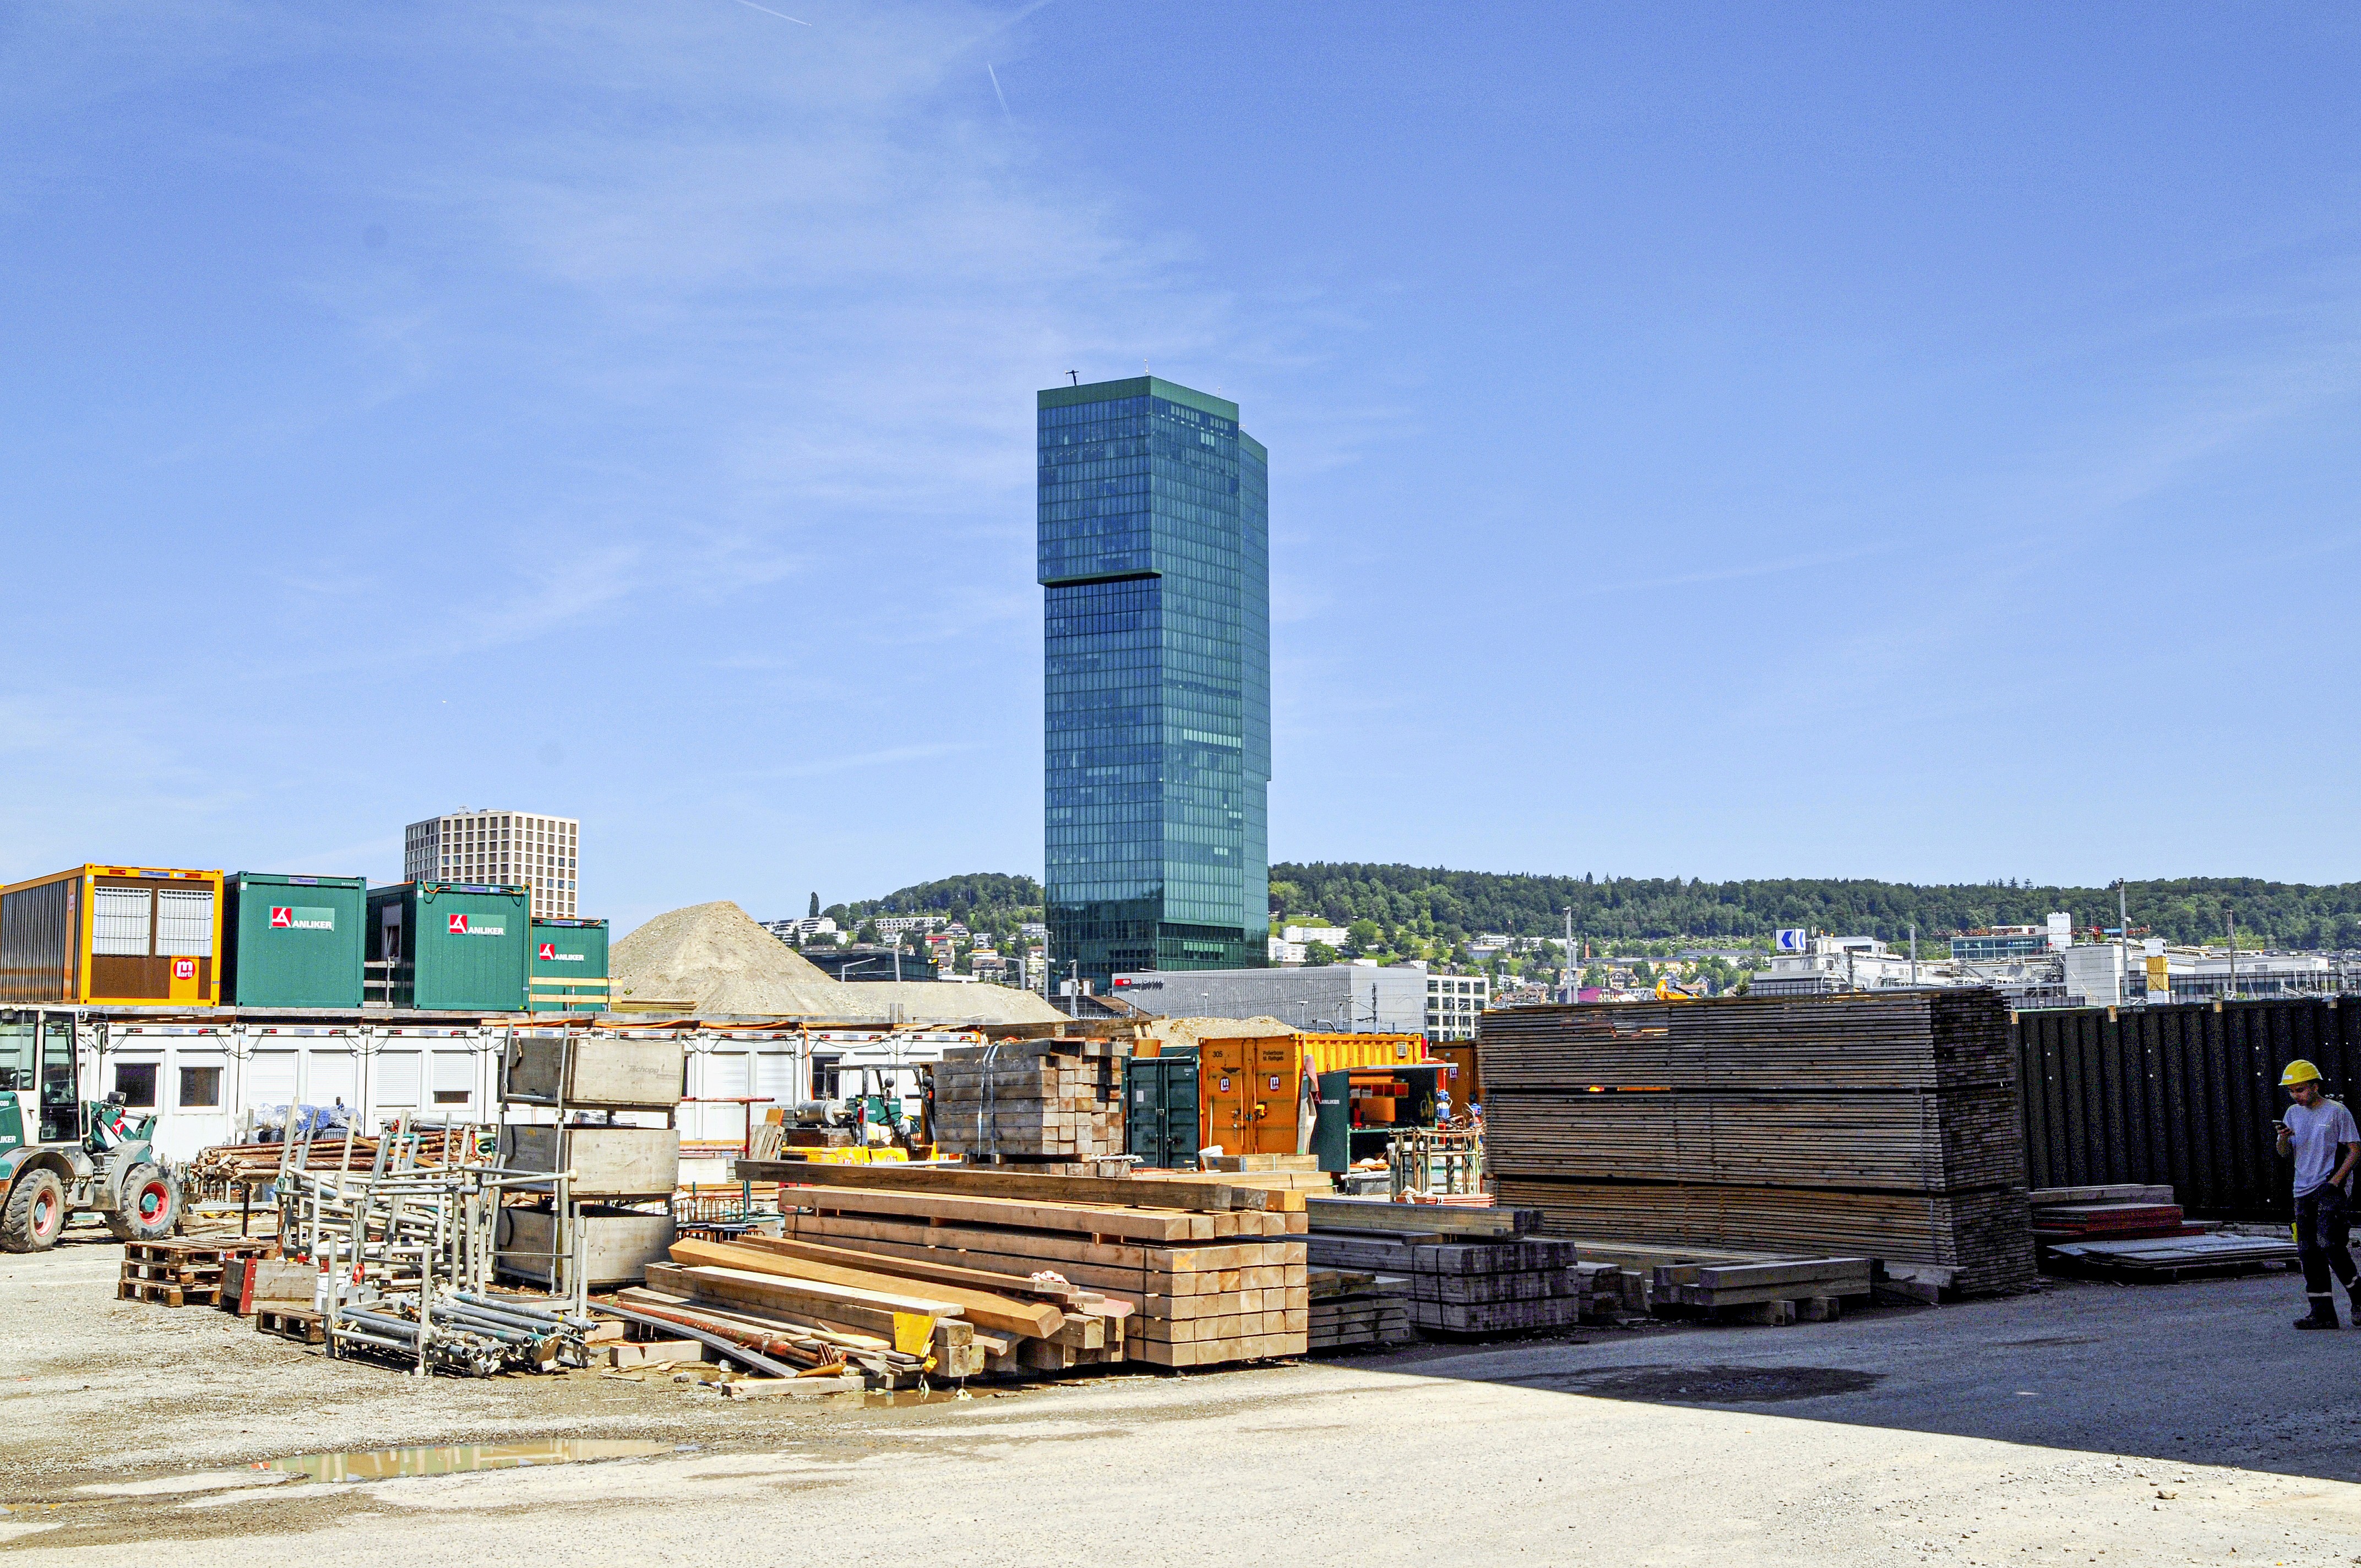 Trotz der Lage mitten in Zürich verfügt das PJZ über genügend Stellfläche. Im Hintergrund der Prime Tower, den das PJZ, hochkant gestellt, um das Dreifache überragen würde.